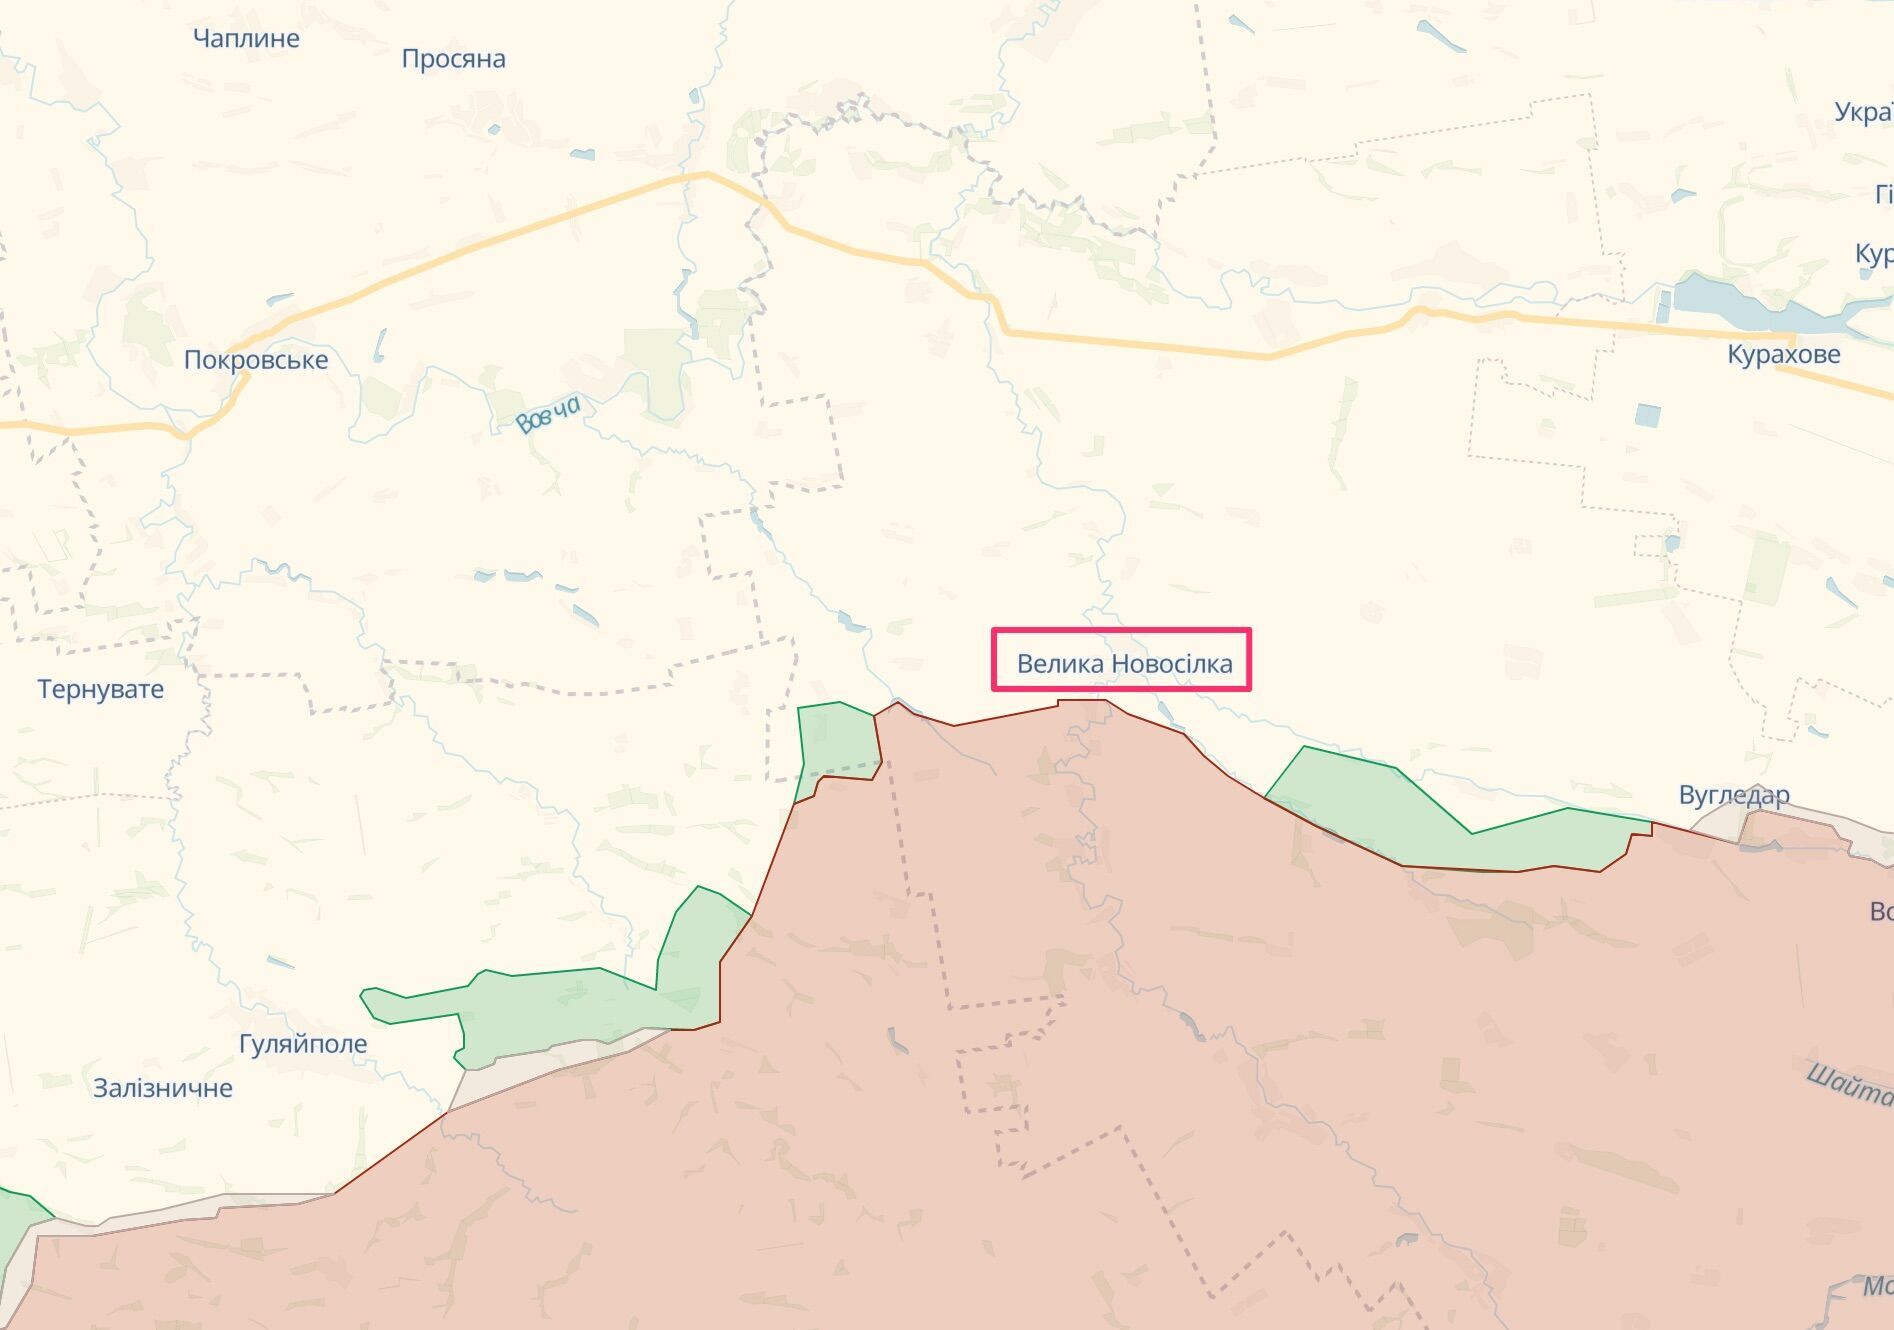 Велика Новосілка – важливий вузол на кордоні трьох областей і стику двох фронтів (Донецького й Запорізького)